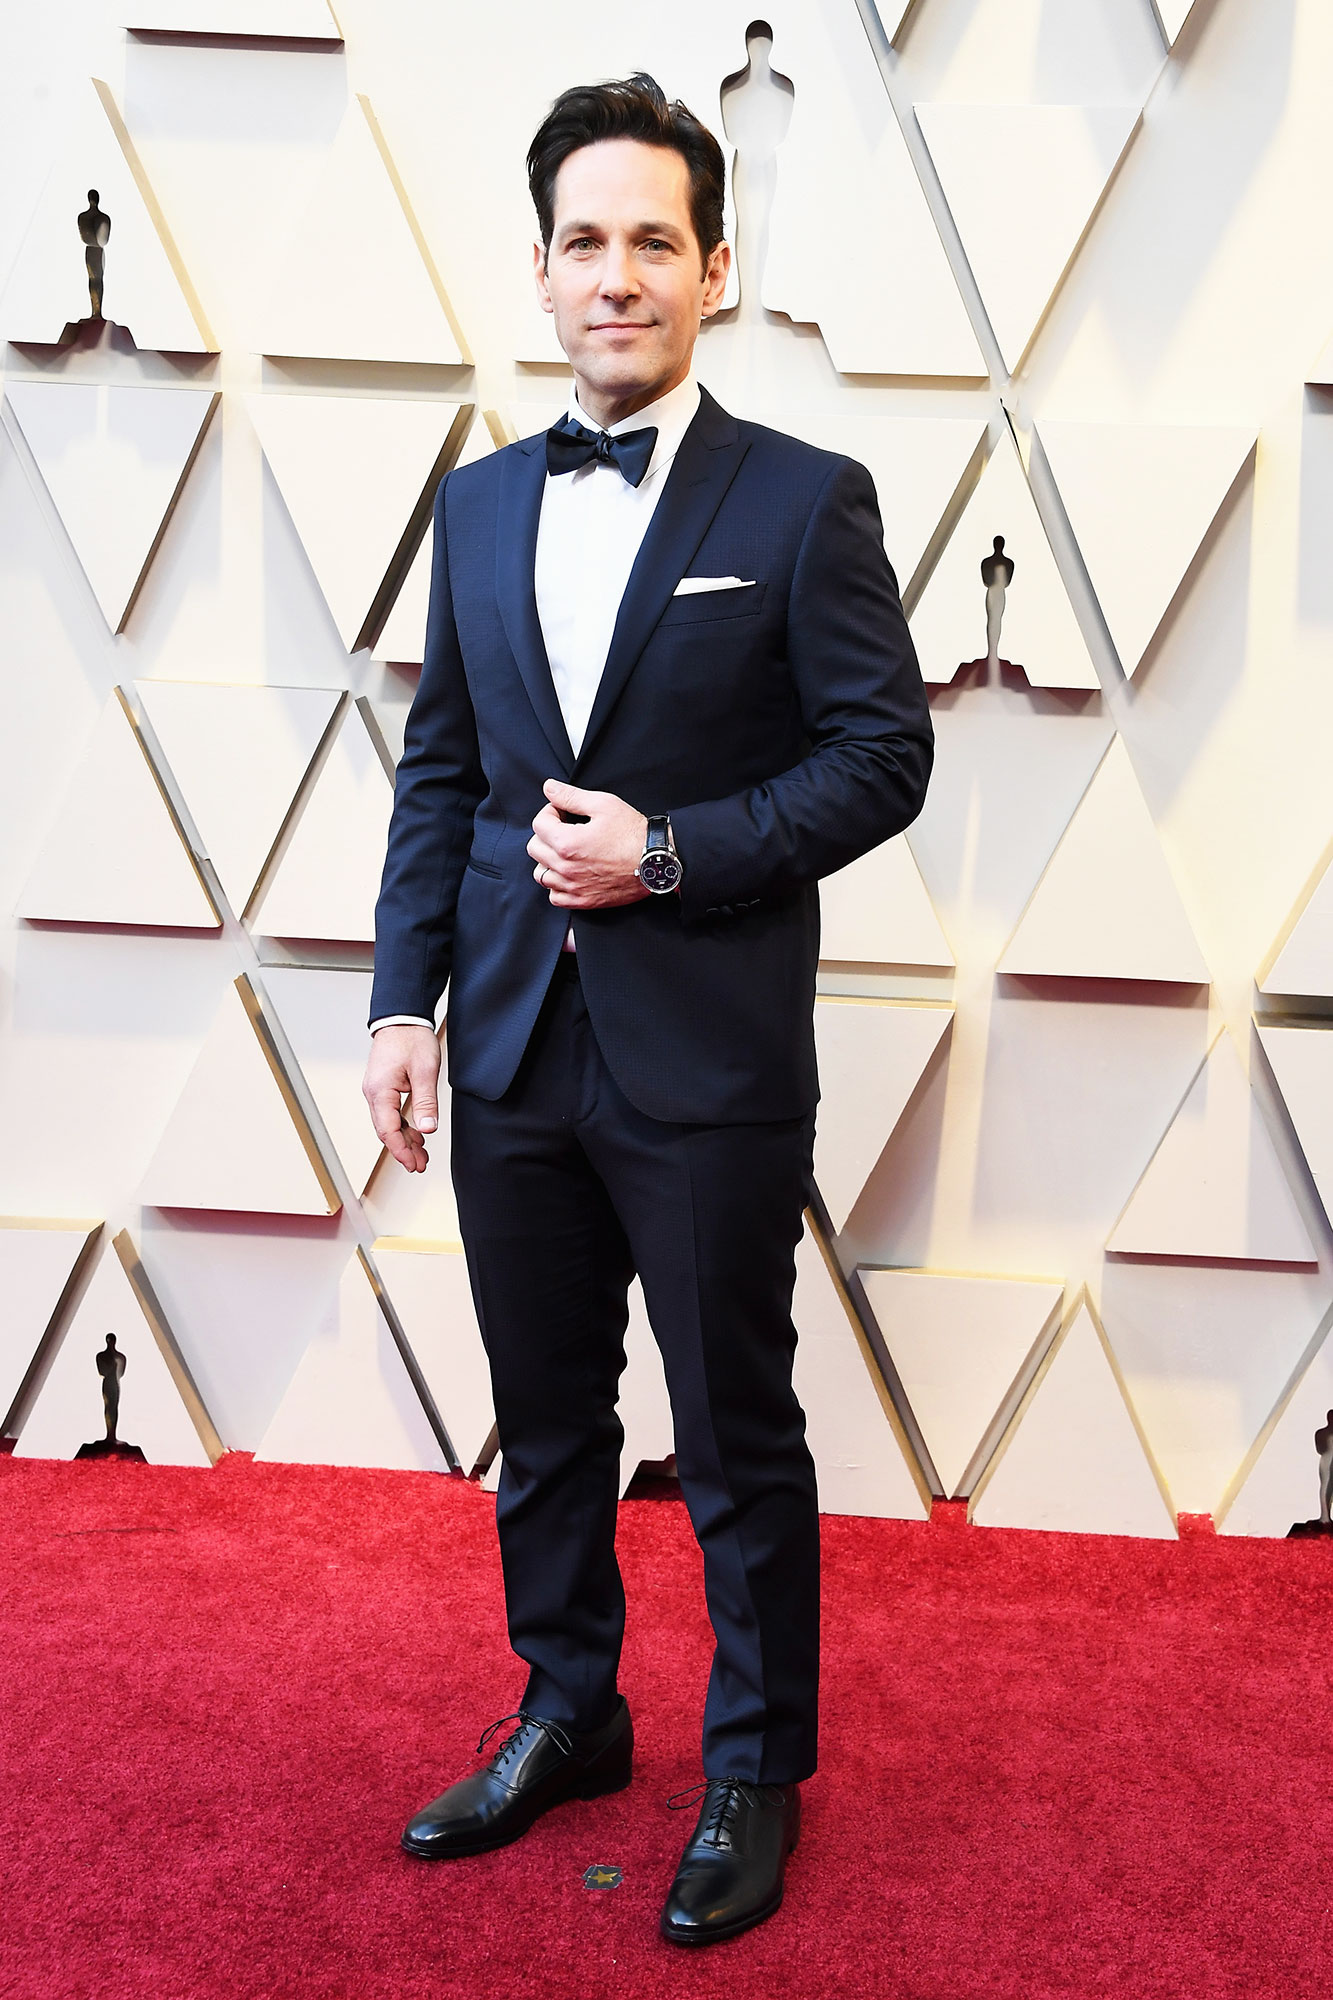 belønning vegetation Mediator Oscars 2019 Red Carpet Fashion: Hot Men in Suits, Tuxes